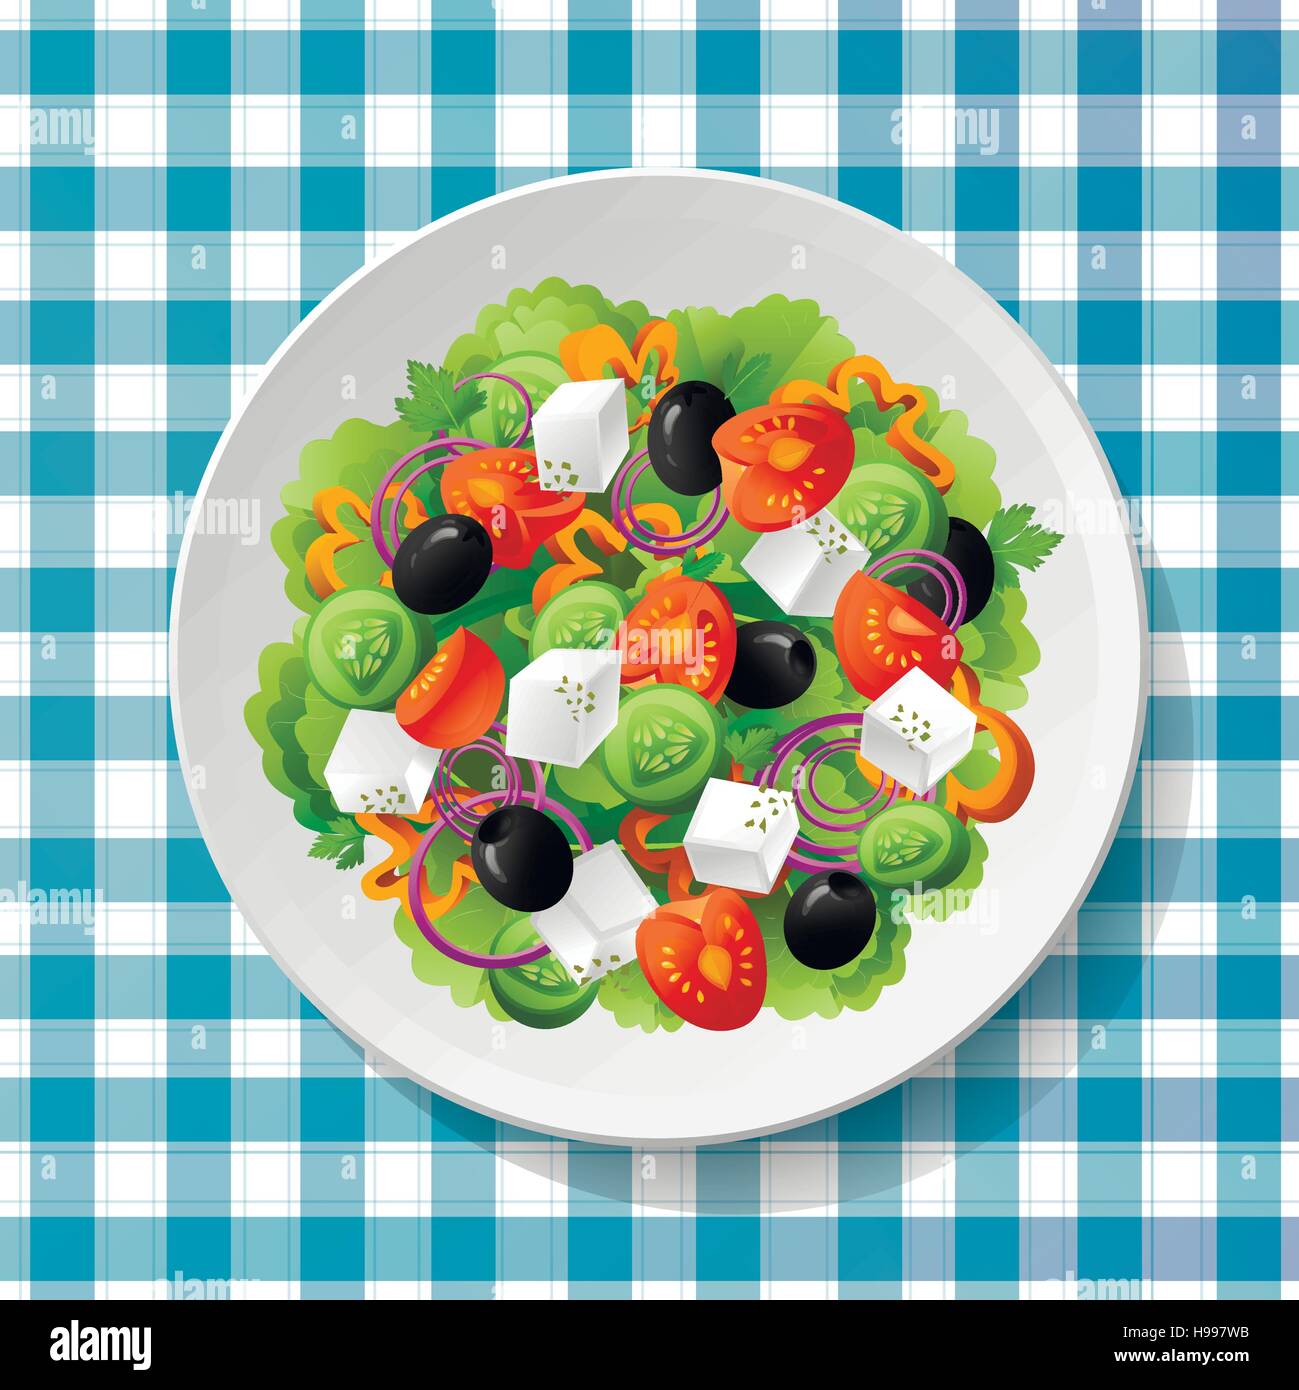 Griechischer Salat mit frischen leckeren Tomaten, Feta-Käse, schwarze Oliven, Gurken, Paprika, Basilikum, Oregano und Petersilie auf weißen Teller am blau-Pfingstmontag Stock Vektor